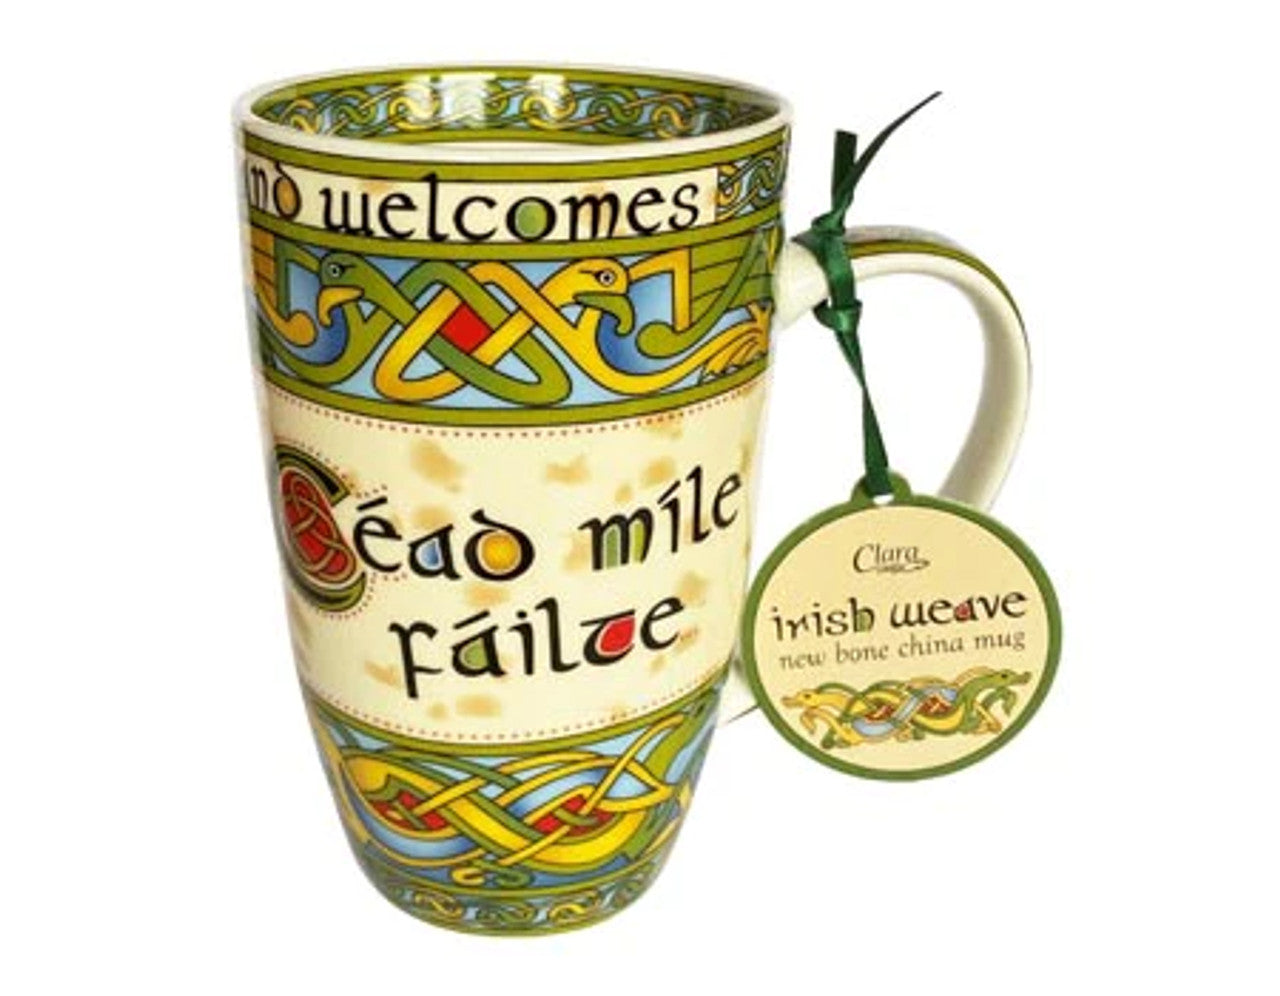 Gaelic Irish Welcome Ceramic Mug